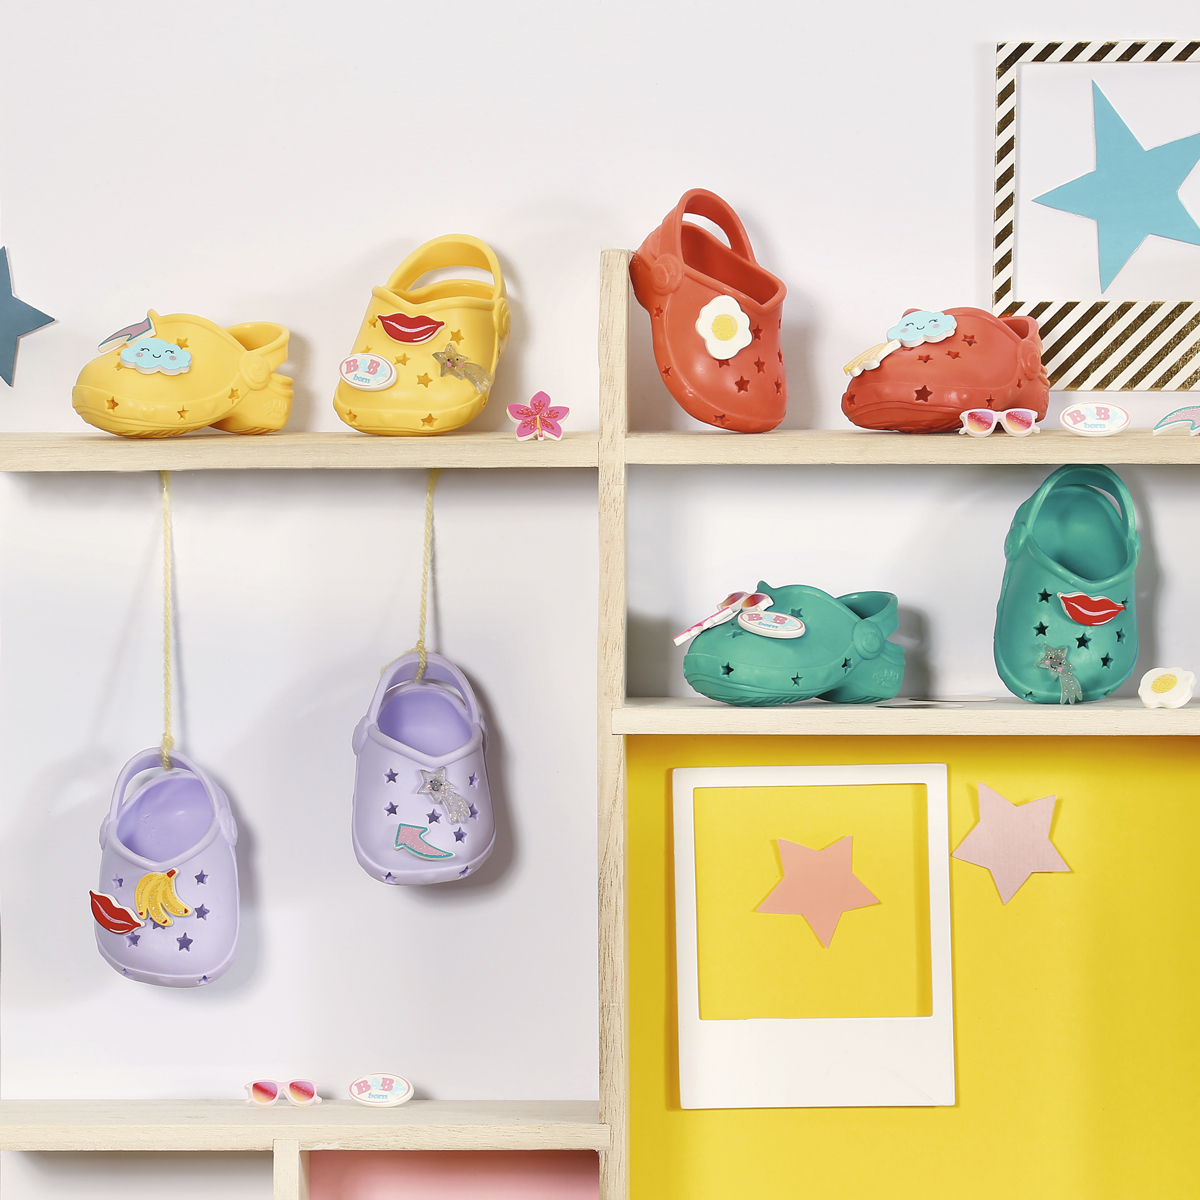 Обувь Baby Born Cандалии с значками для куклы, желтые, 43 см (831809-3) - фото 5